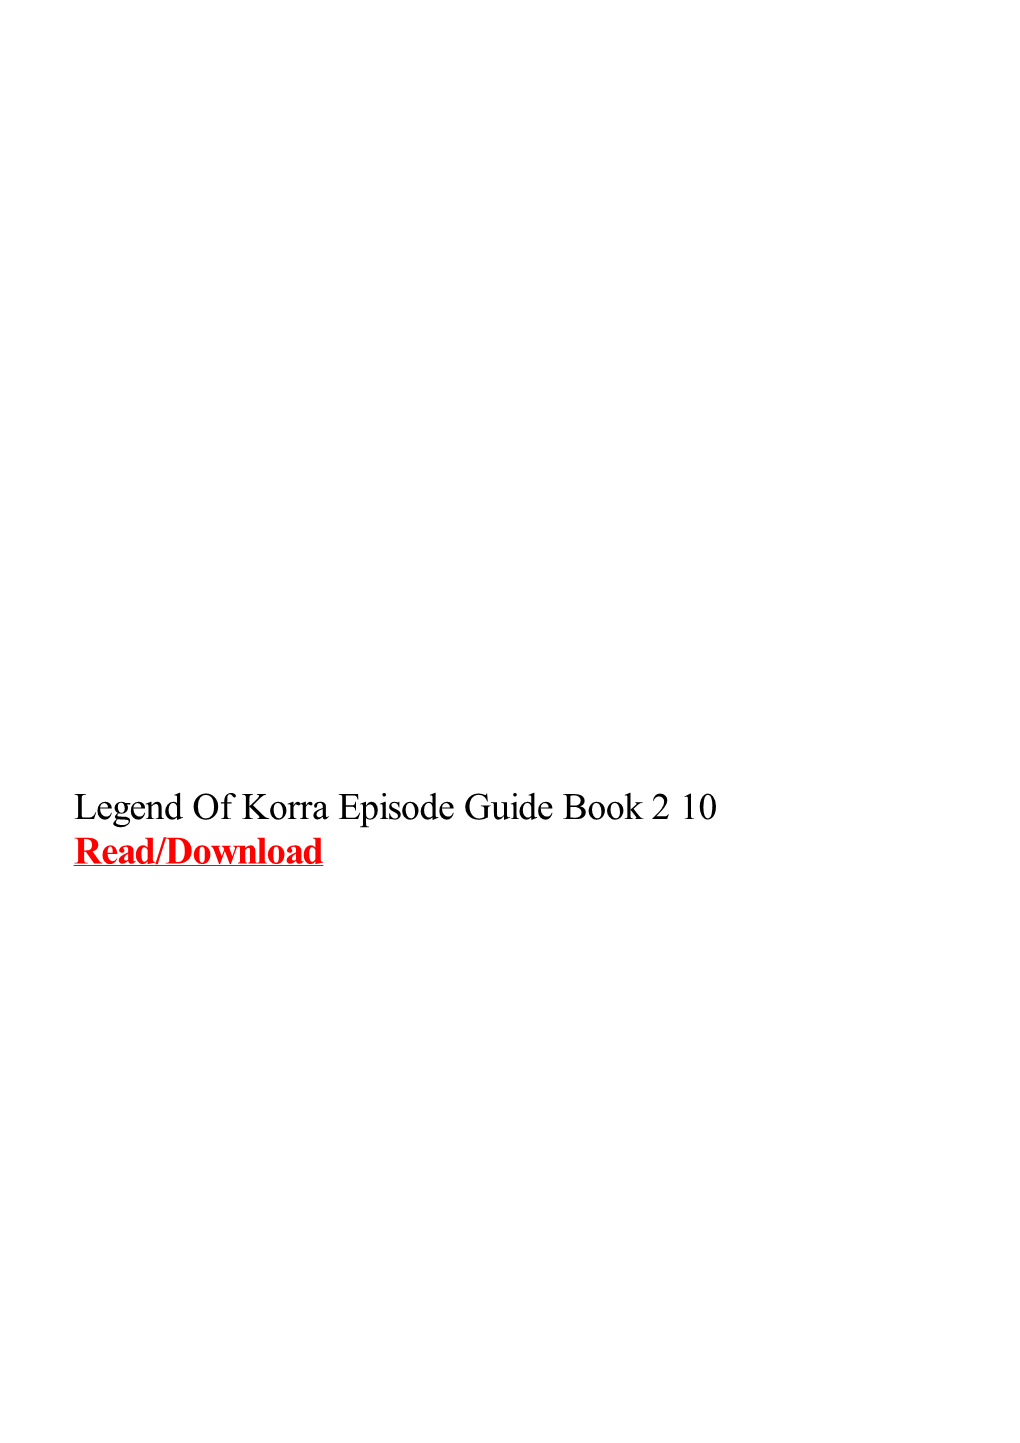 Legend of Korra Episode Guide Book 2 10